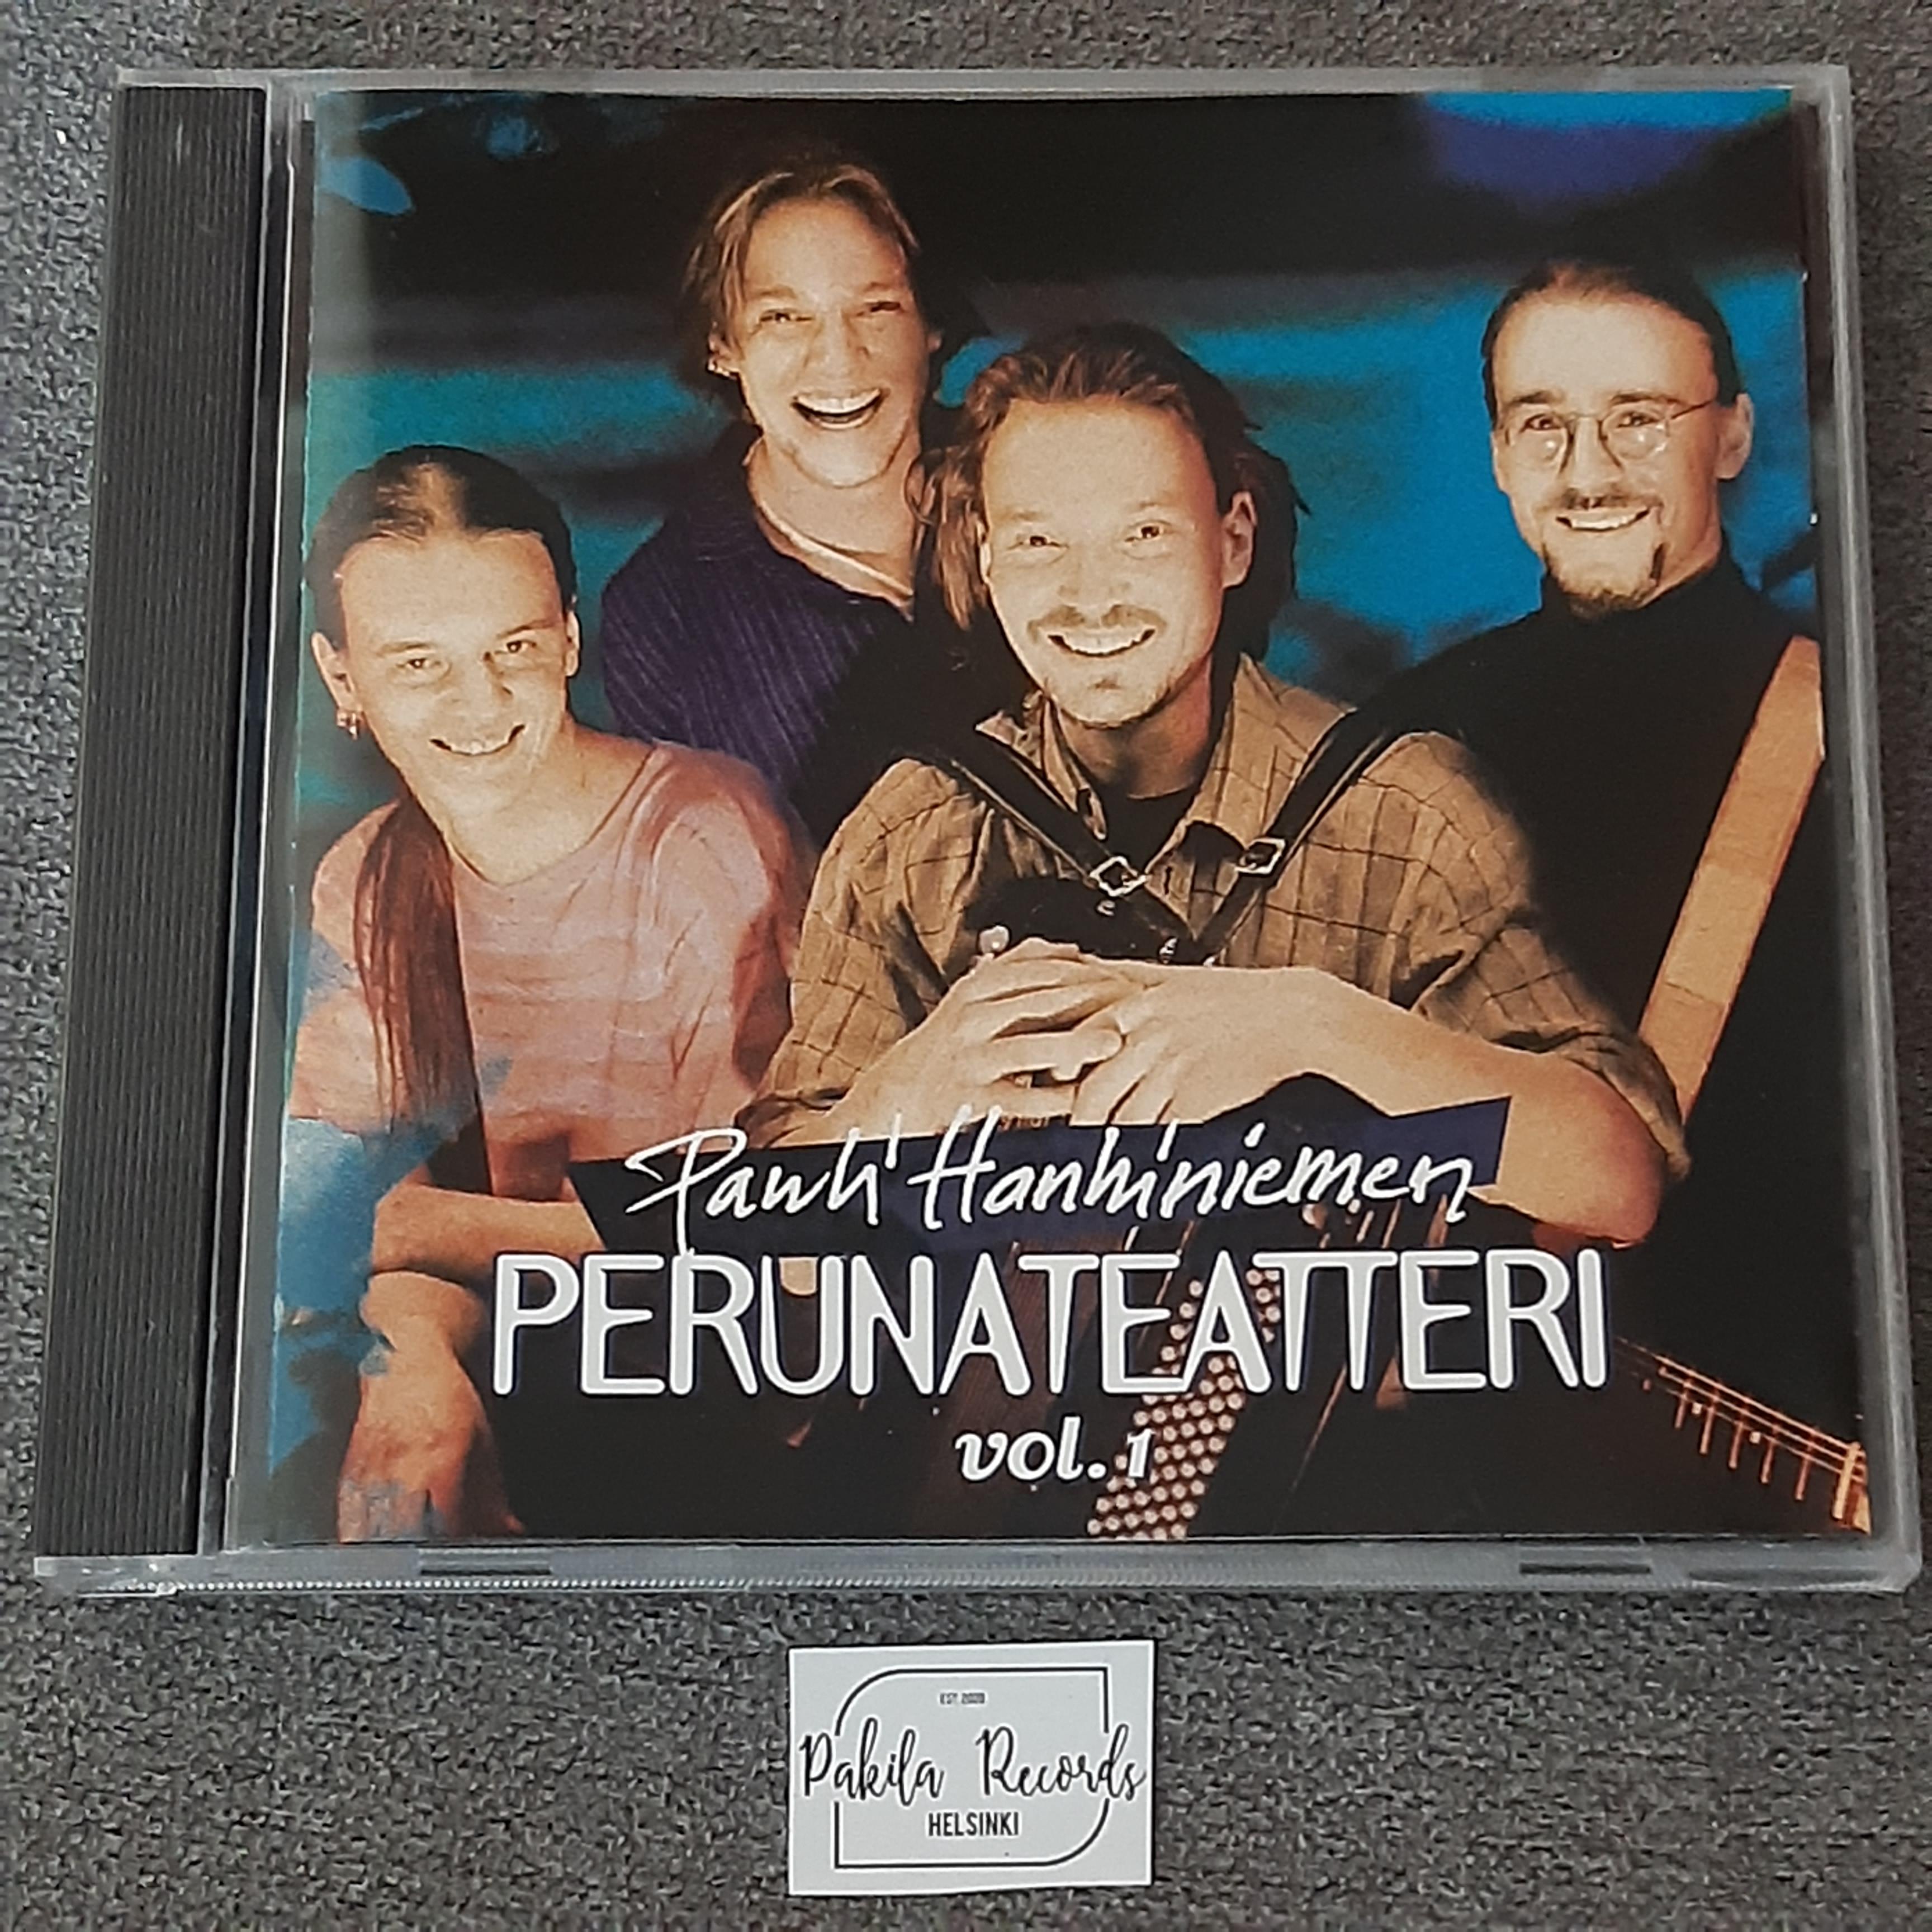 Pauli Hanhiniemen Perunateatteri - Vol. 1 - CD (käytetty)